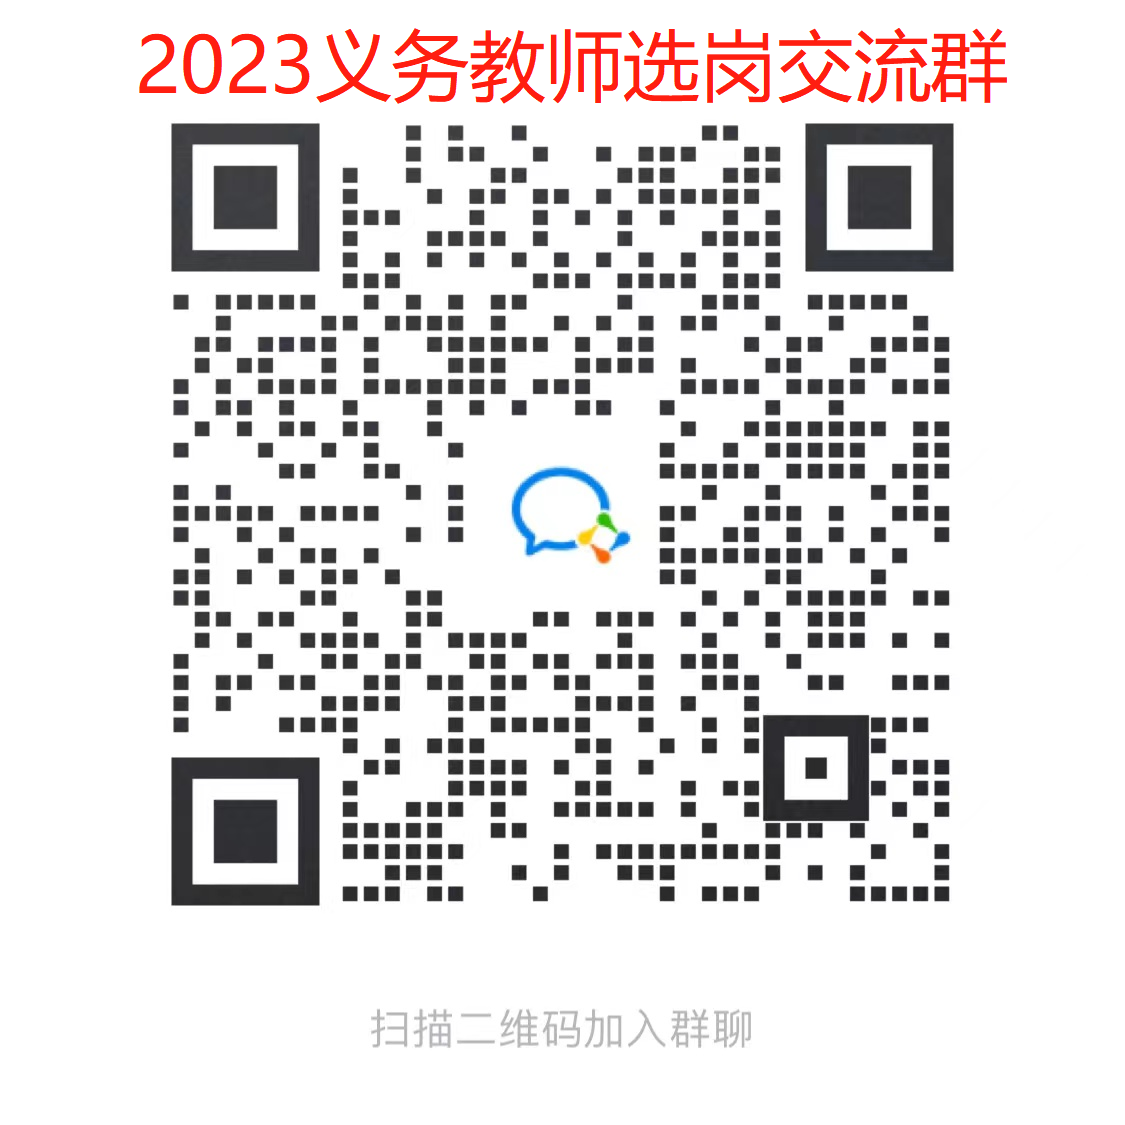 2023年湖北省中小学教师公开招聘 笔试加分有关政策公告